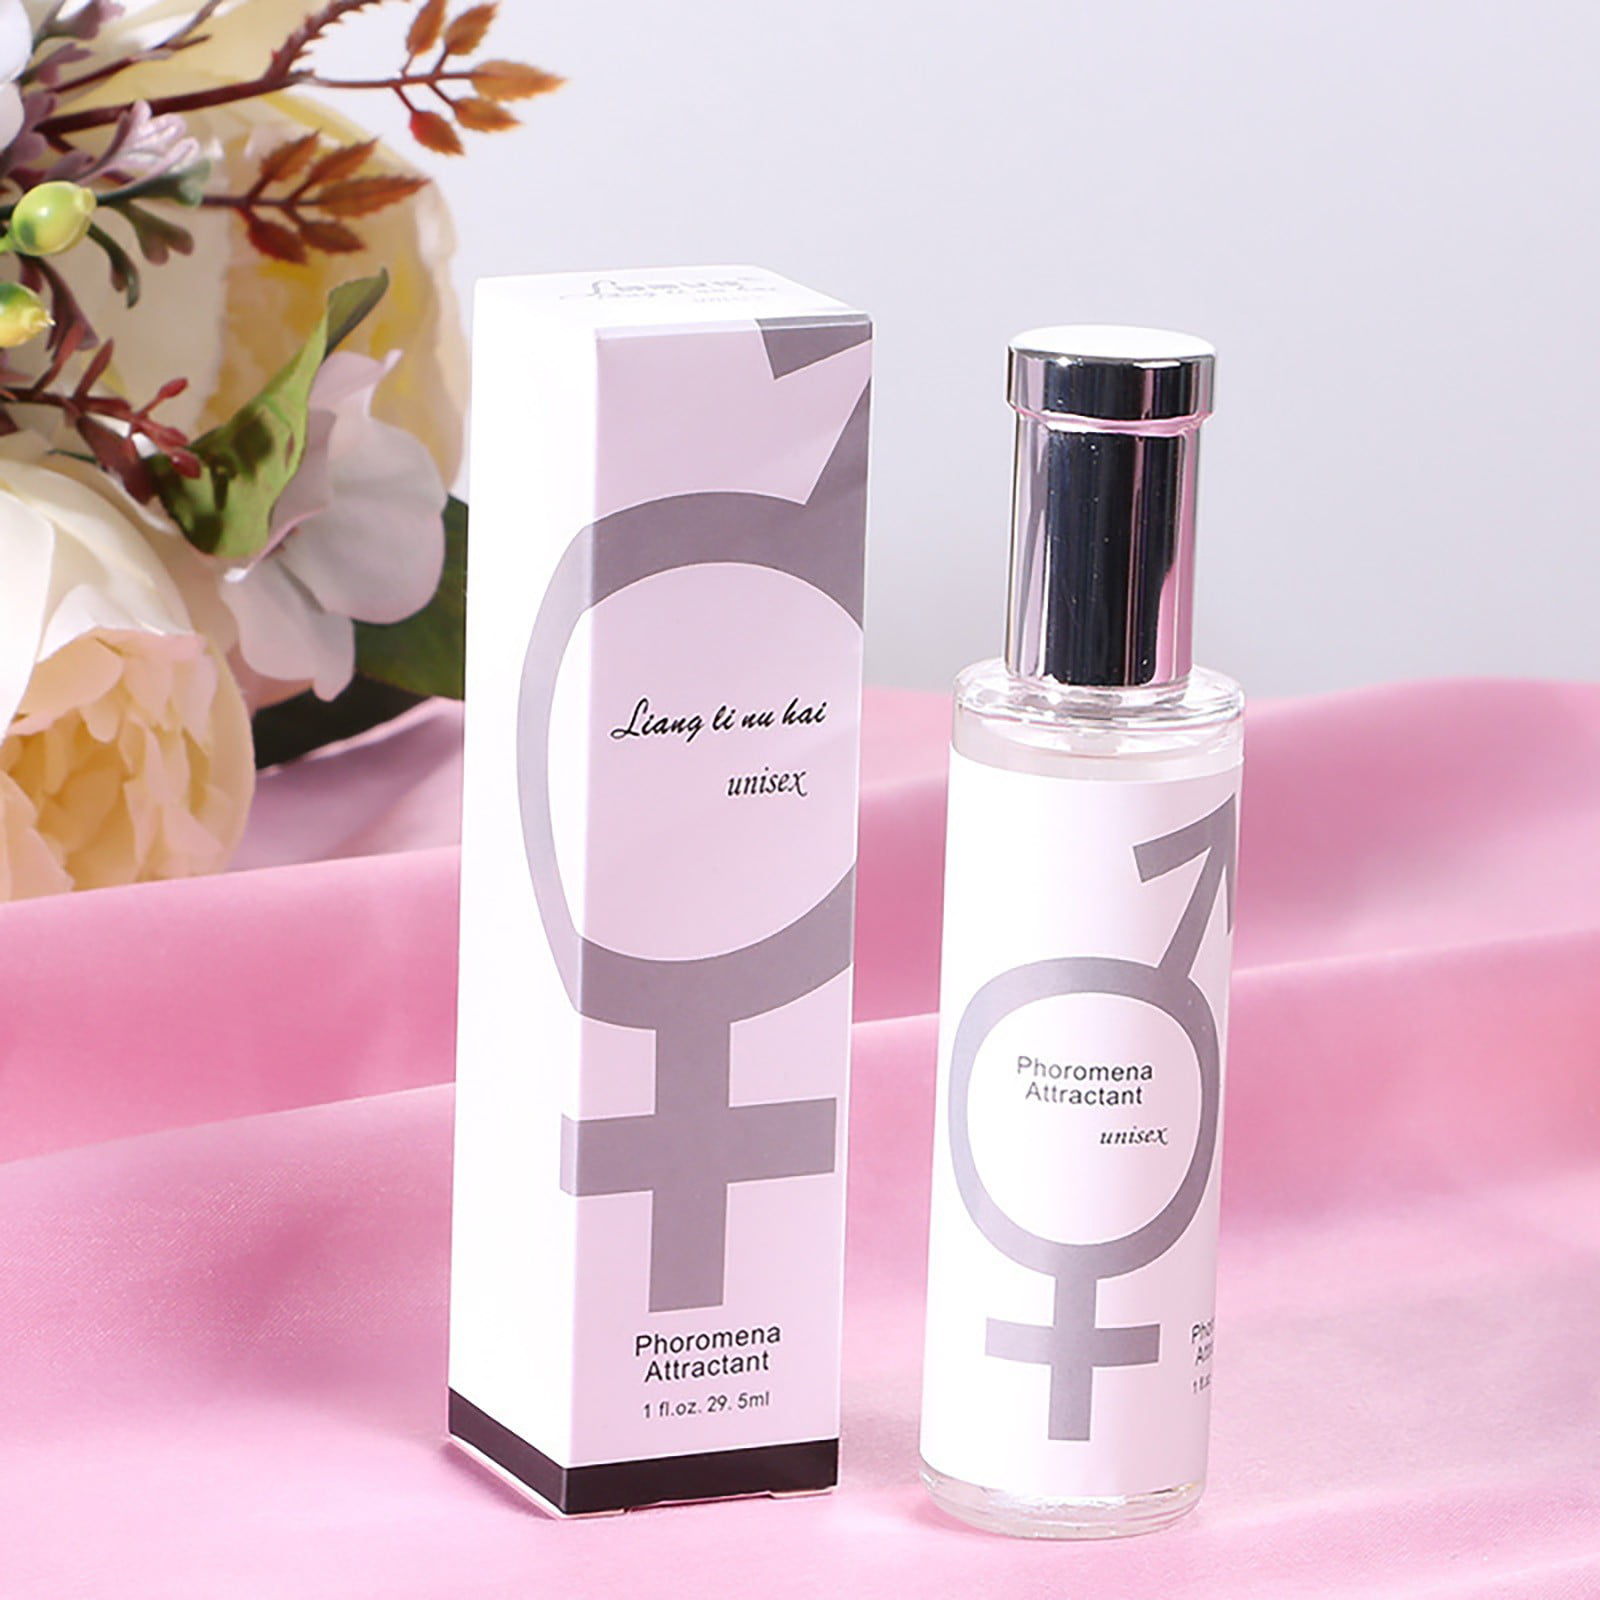 Yubnlvae Women's Pheromones Perfume Fresh and Natural Feminine